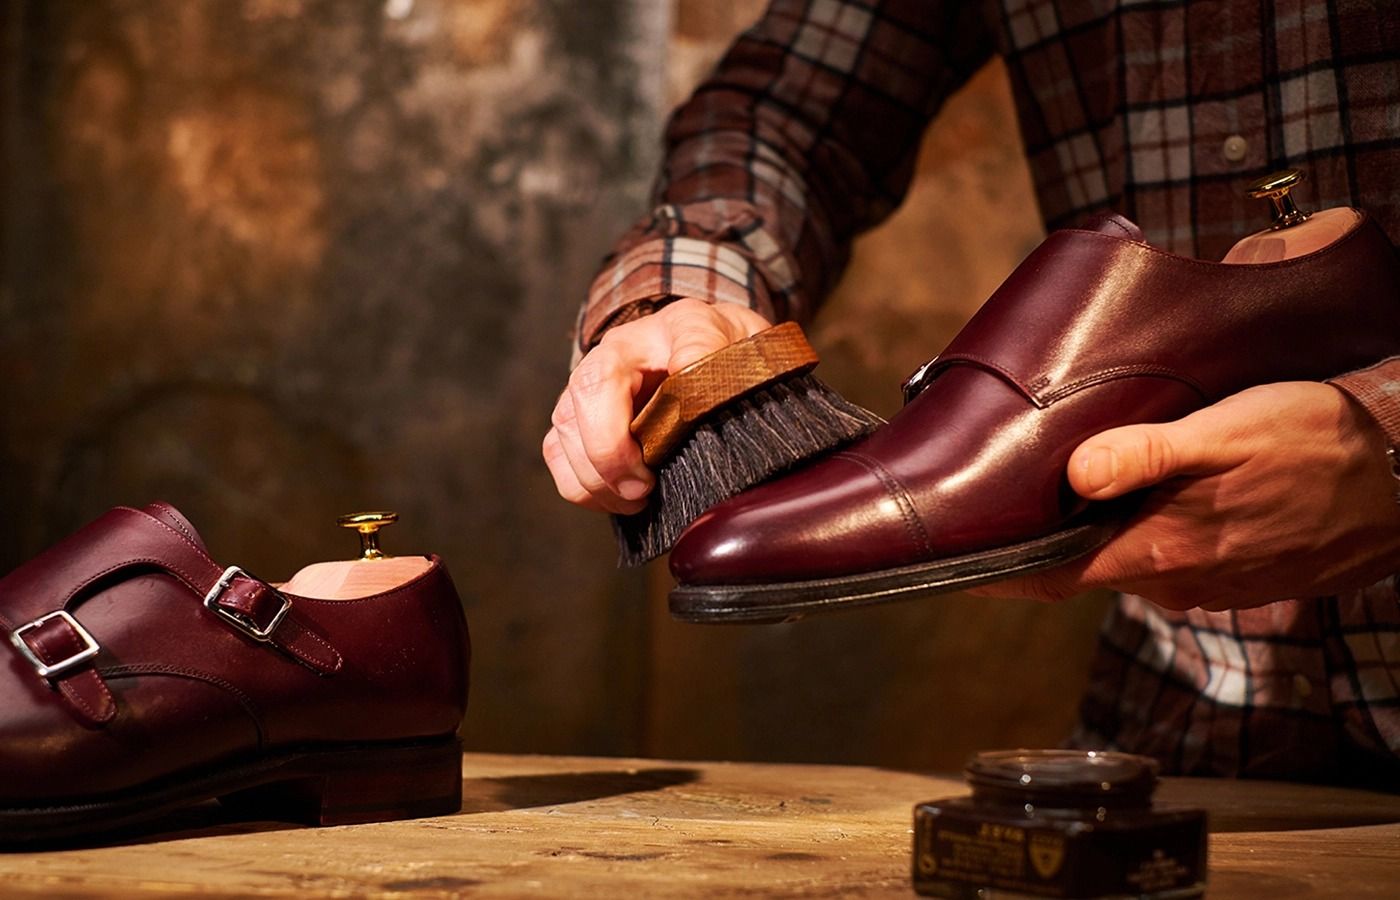 Tất tần tật các sản phẩm chăm sóc giày da mà bạn nên biết